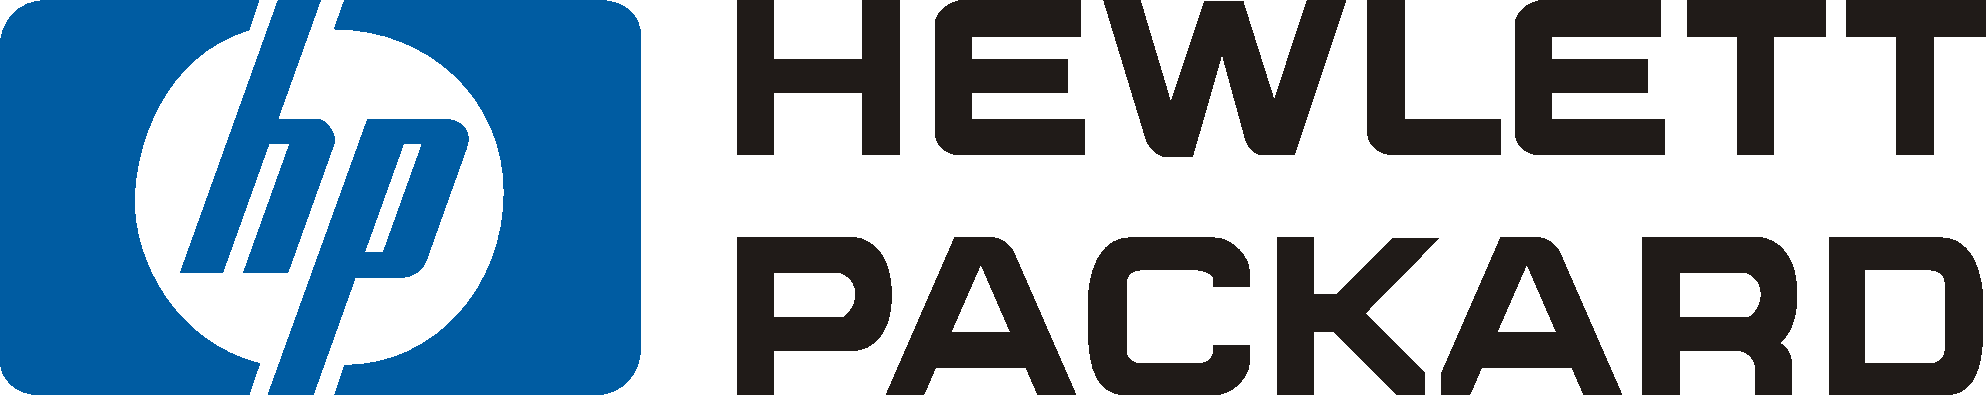 HP Hewlett-Packard Logo - Hewlett Packard | Criteo Success Story